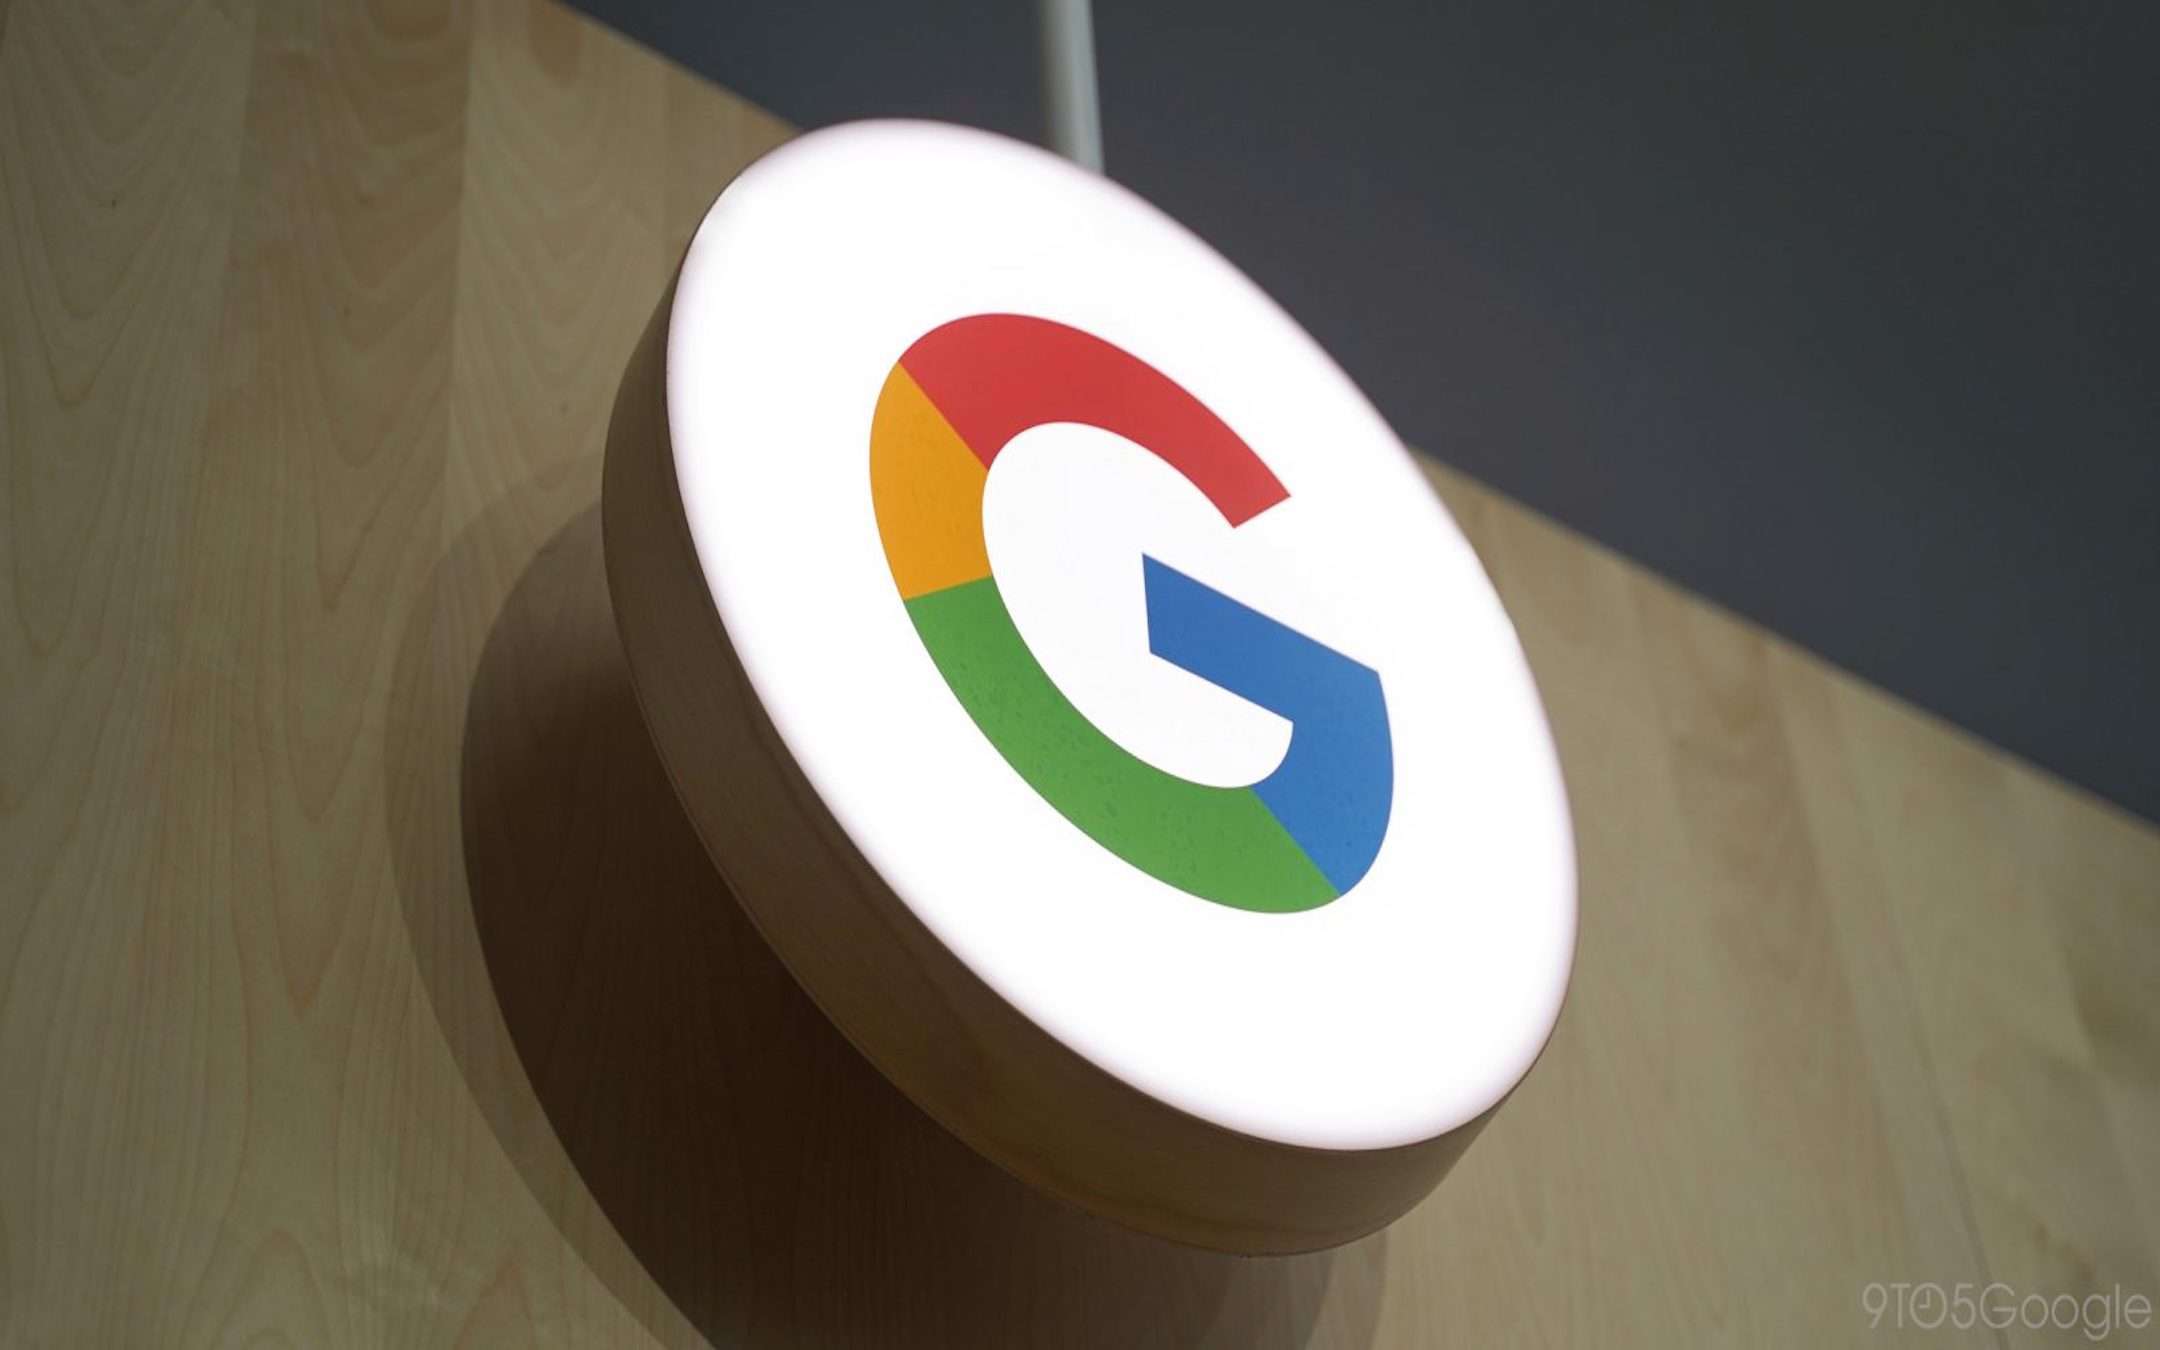 Google down 14 dicembre: che cosa sta succedendo?